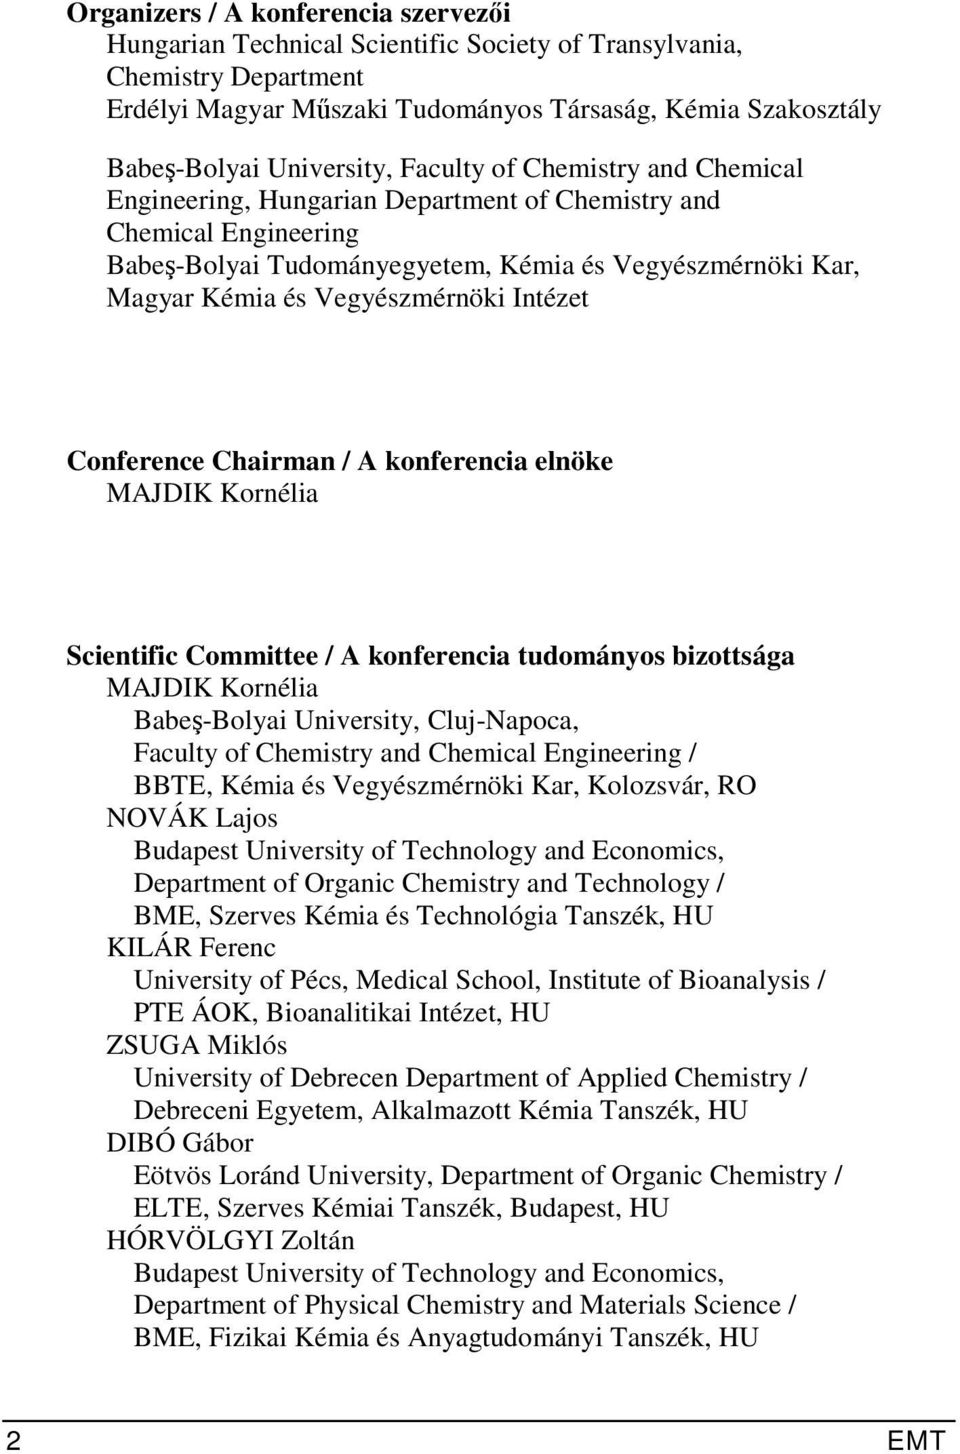 17 th International Conference on Chemistry. XVII. Nemzetközi  Vegyészkonferencia - PDF Ingyenes letöltés